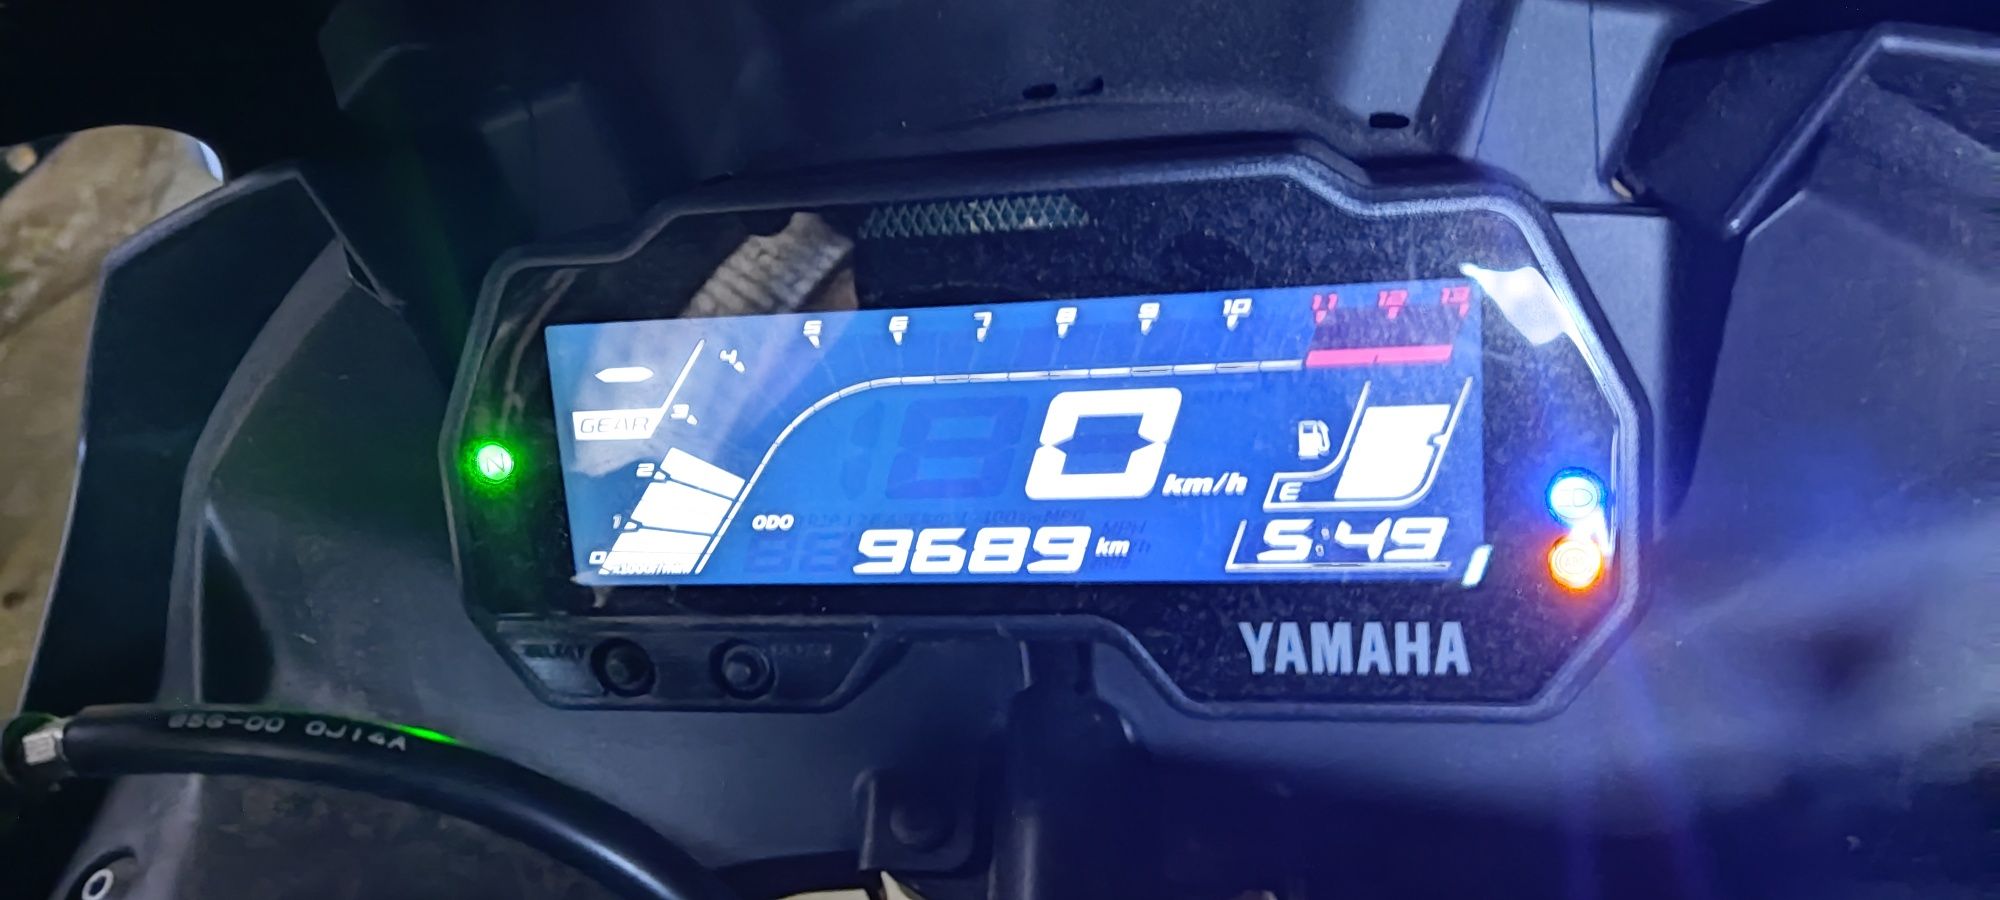 Yamaha yzf r125 licznik zegary 19-21